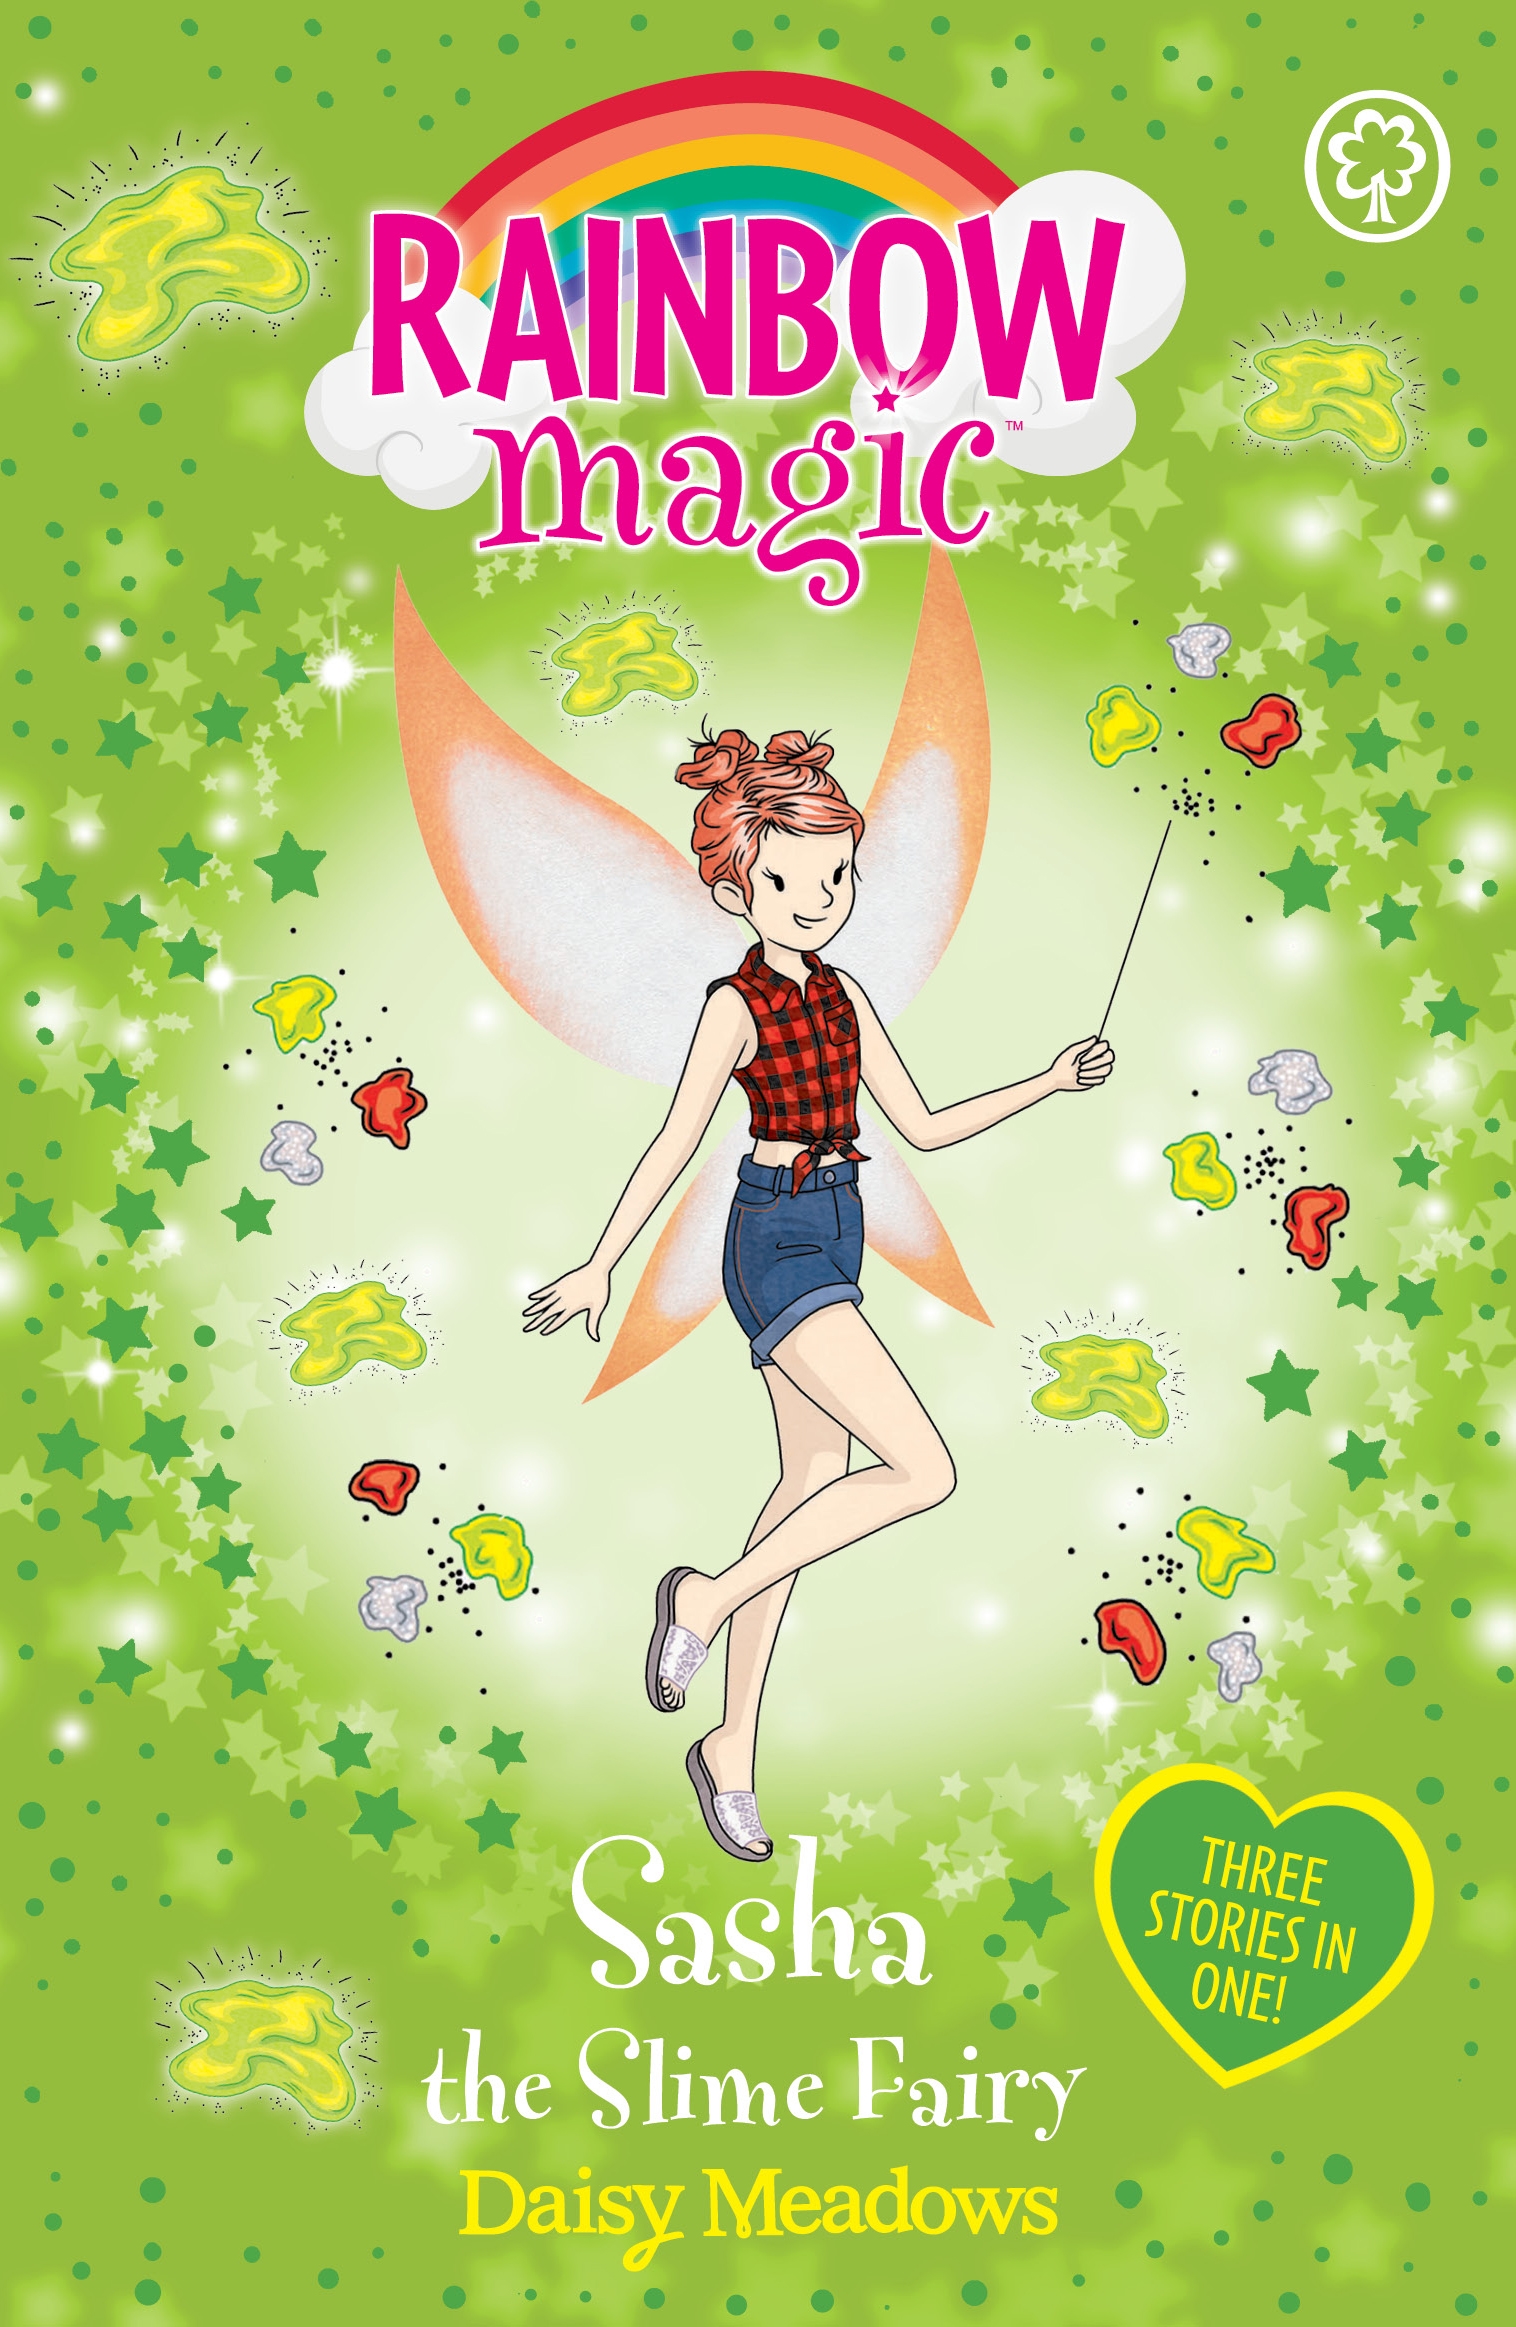 Rainbow Magic: Sasha the Slime Fairy by Daisy Meadows | Hachette UK